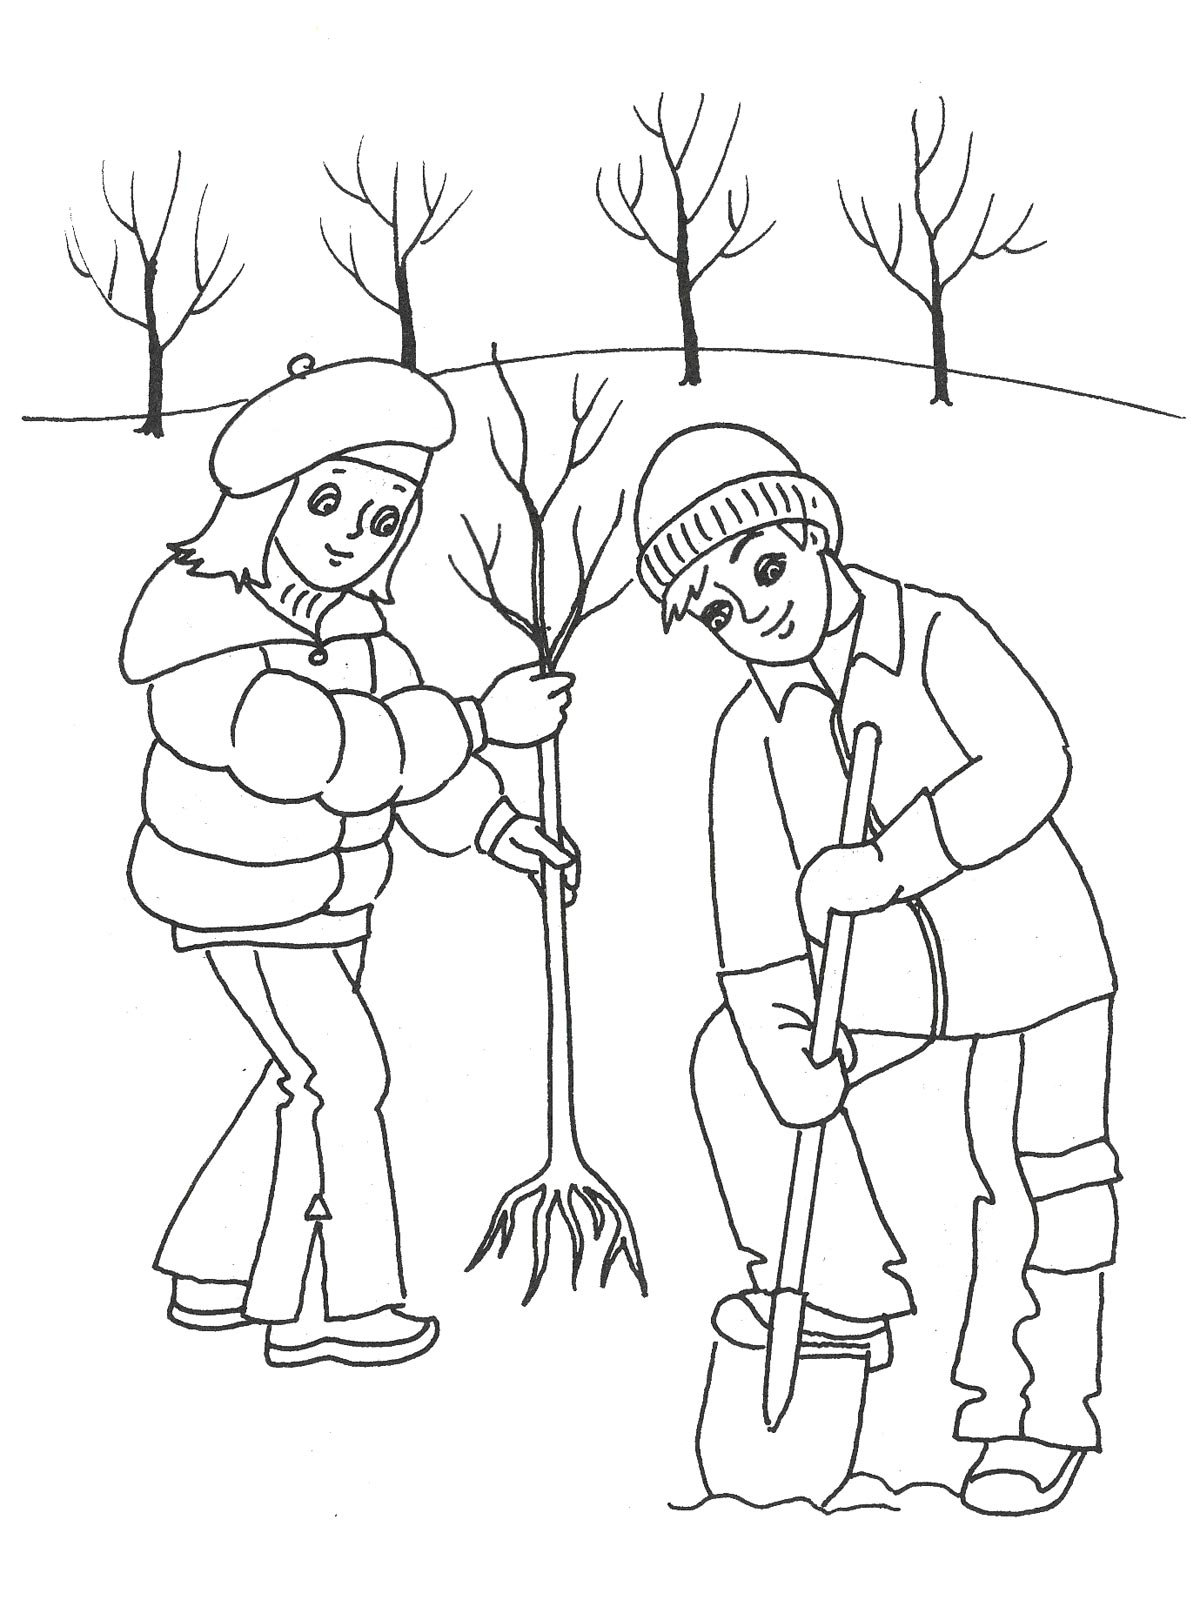 Дети сажают деревья - Разукрашки с праздником весны марта (дети, деревья)